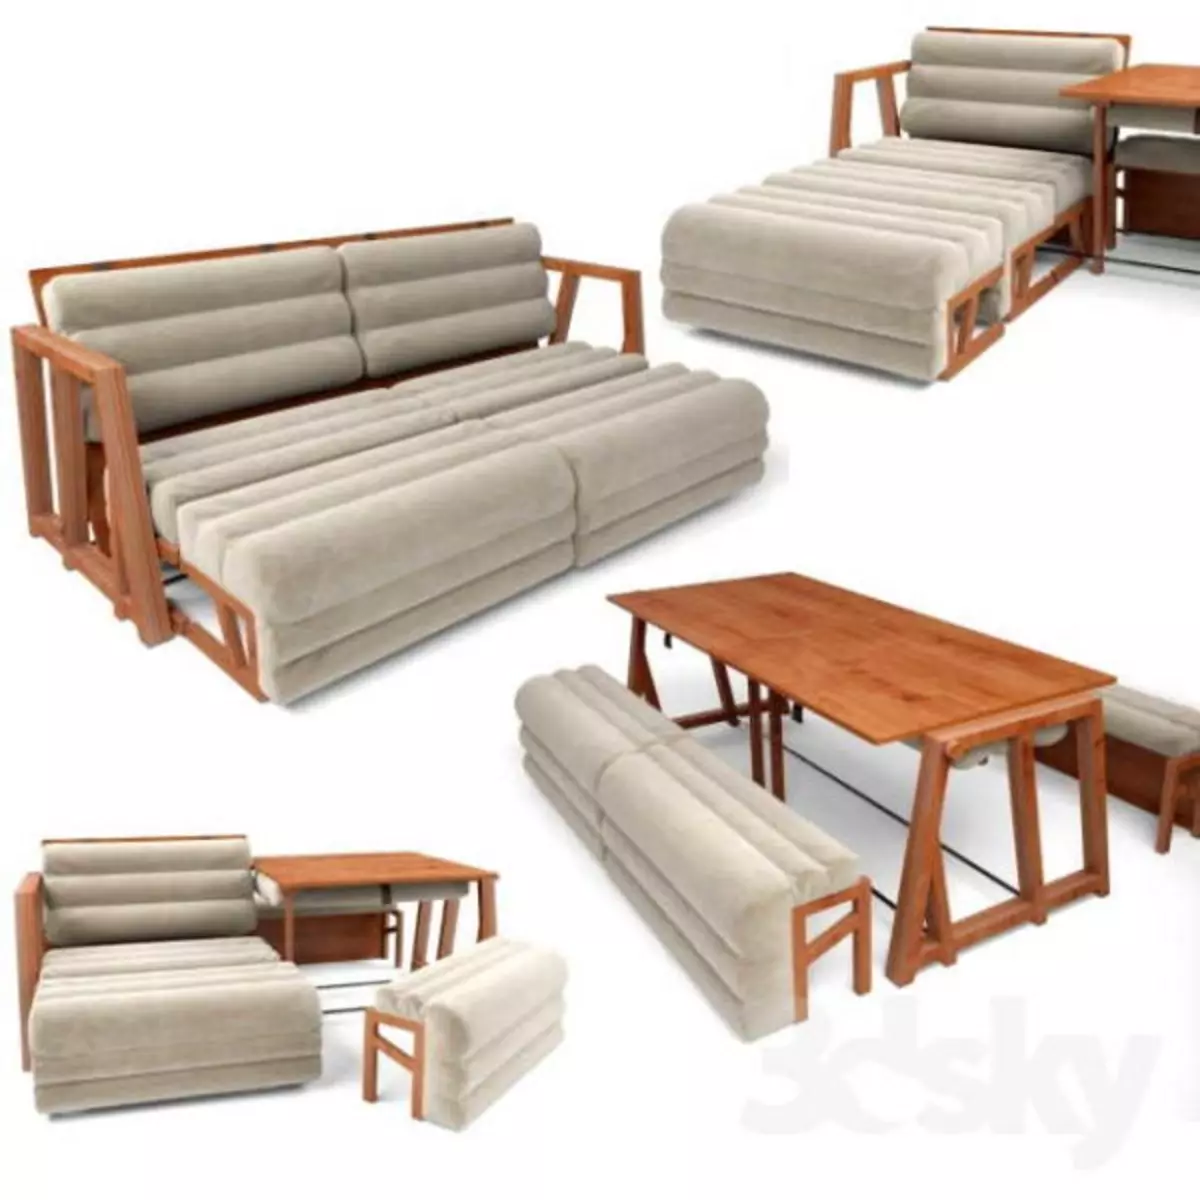 Трансформеры 3 в 1 диван стол кровать. 3moods диван-трансформер (стол, кресло, диван,) by Humberto Navarro, Unamo Design Studio. Диван трансформер 3 в 1 диван стол. Chavannes диван трансформер. Кровать-диван стол трансформер 3 в 1.